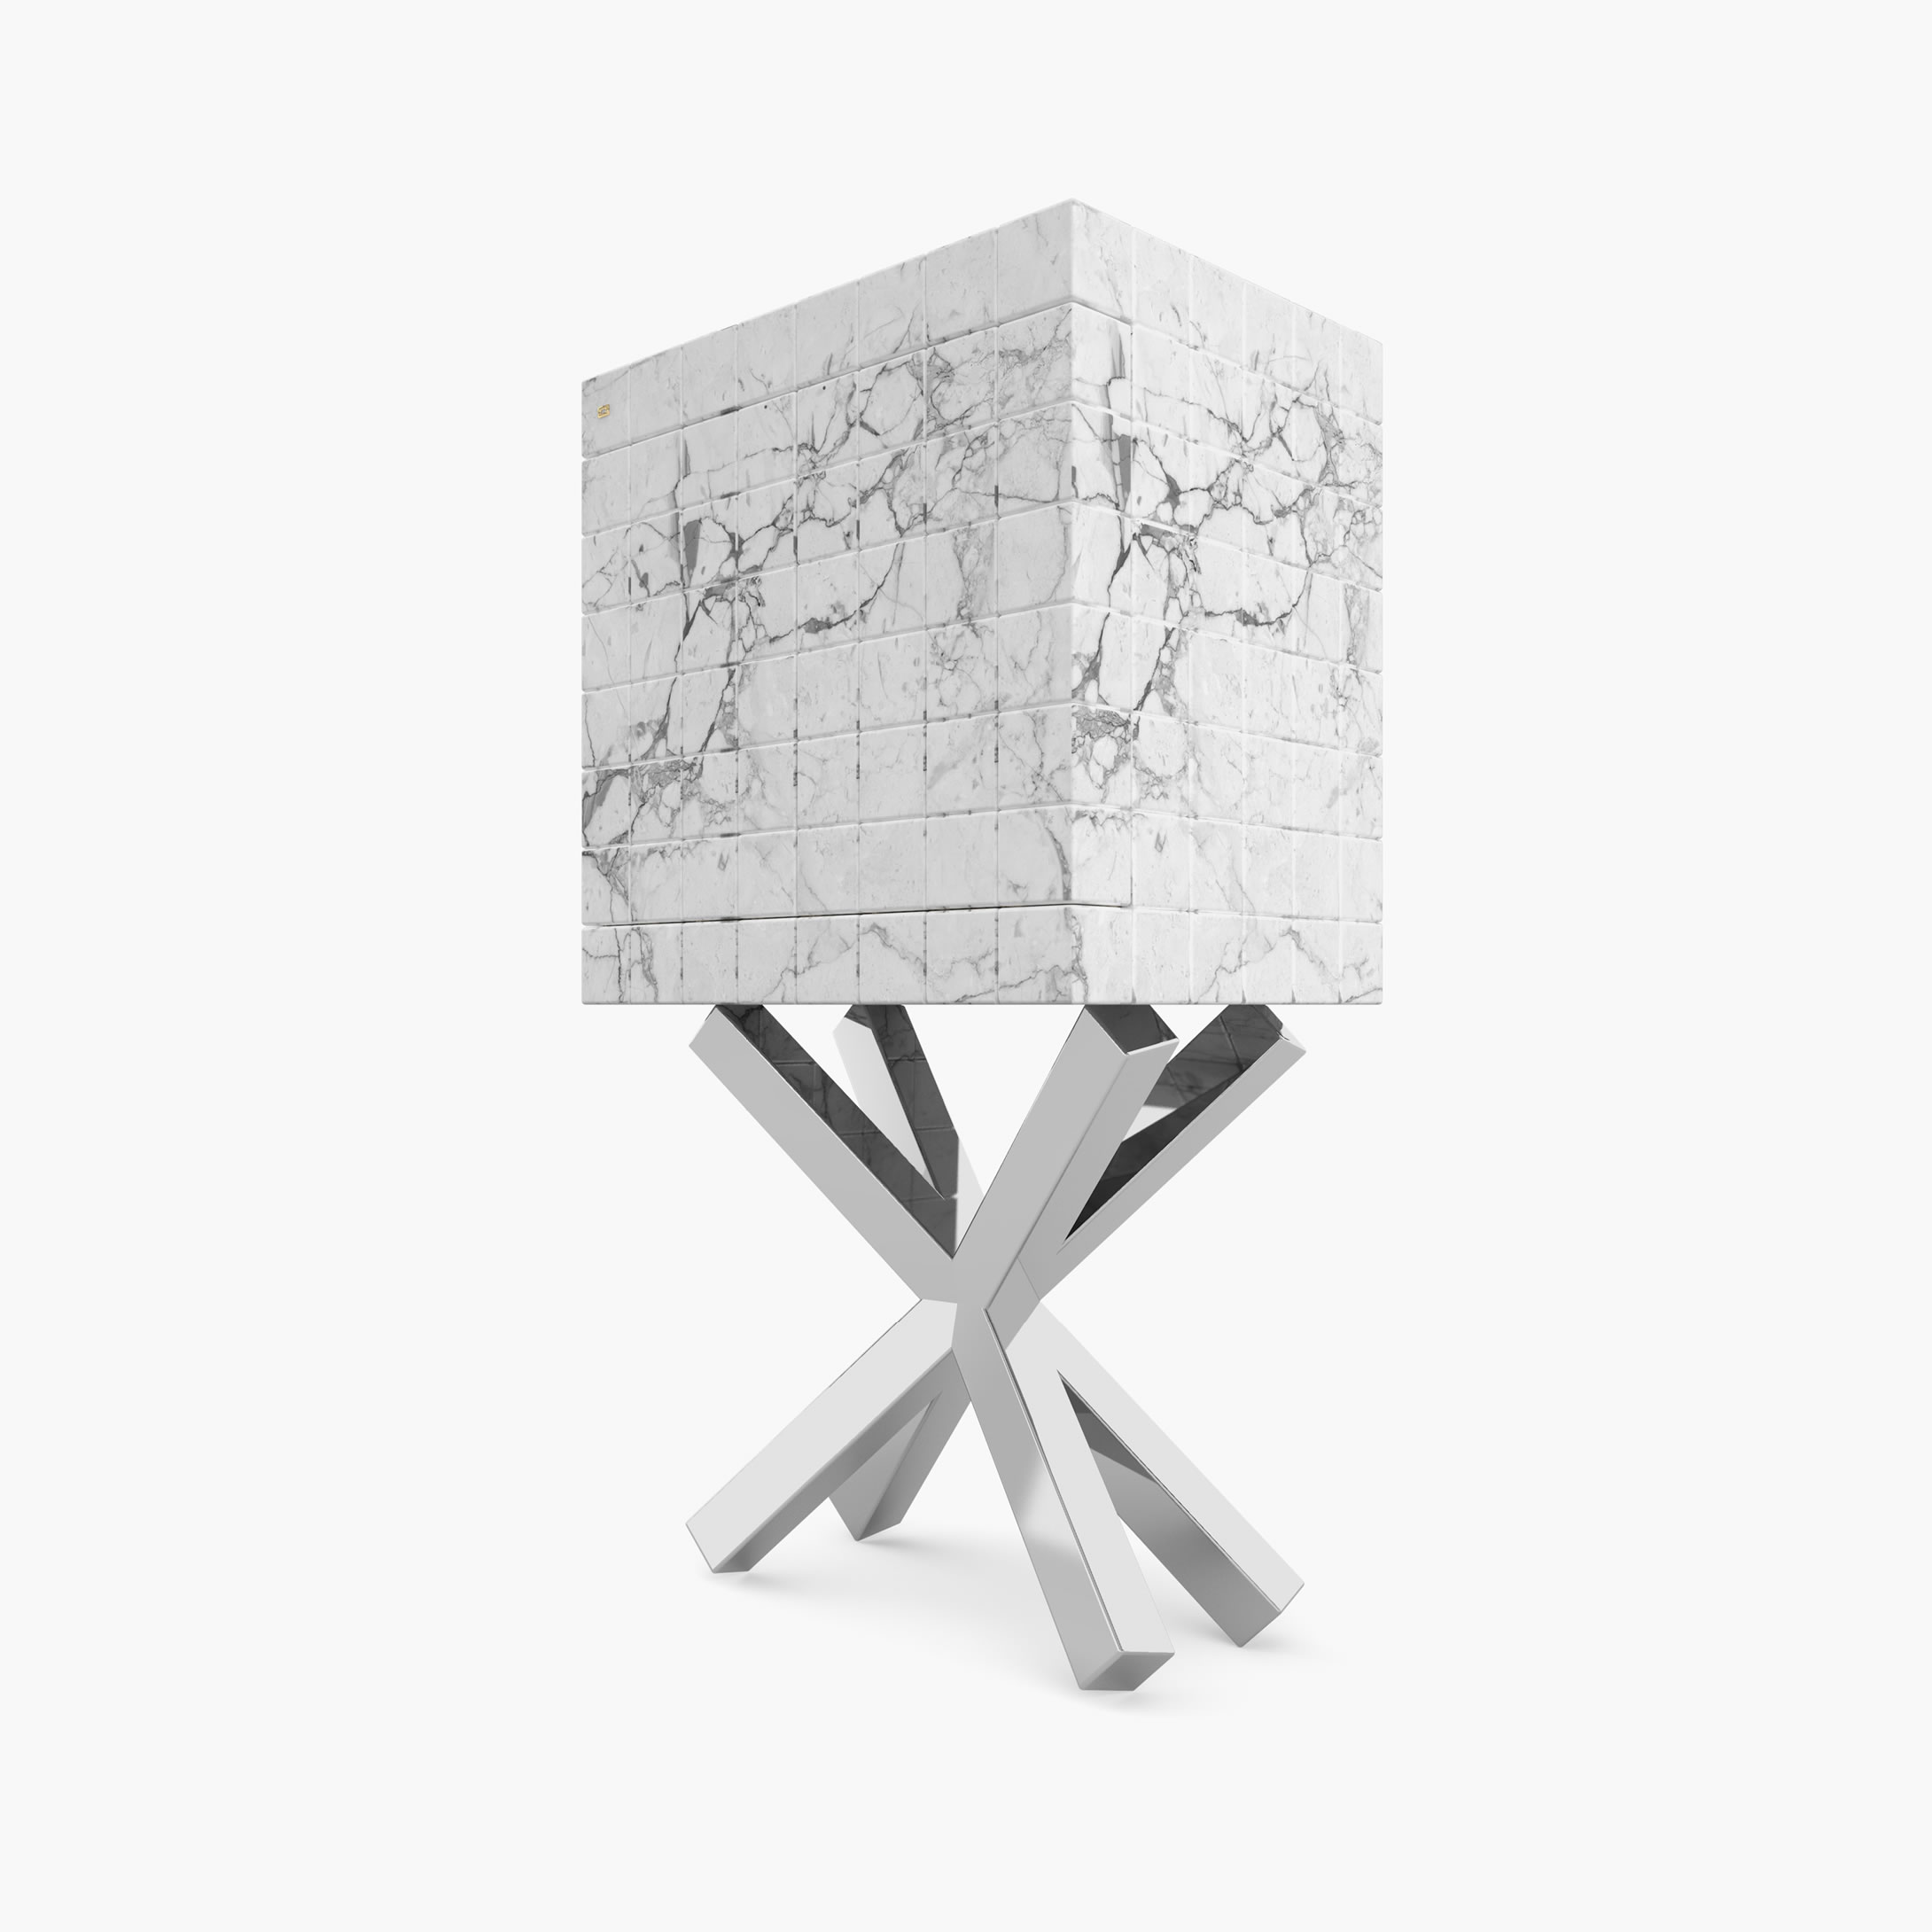 Schrank aus Kuben Weiss Arabescato Marmor minimalistisch Wohnzimmer Luxus Schraenke FS 146 A FELIX SCHWAKE